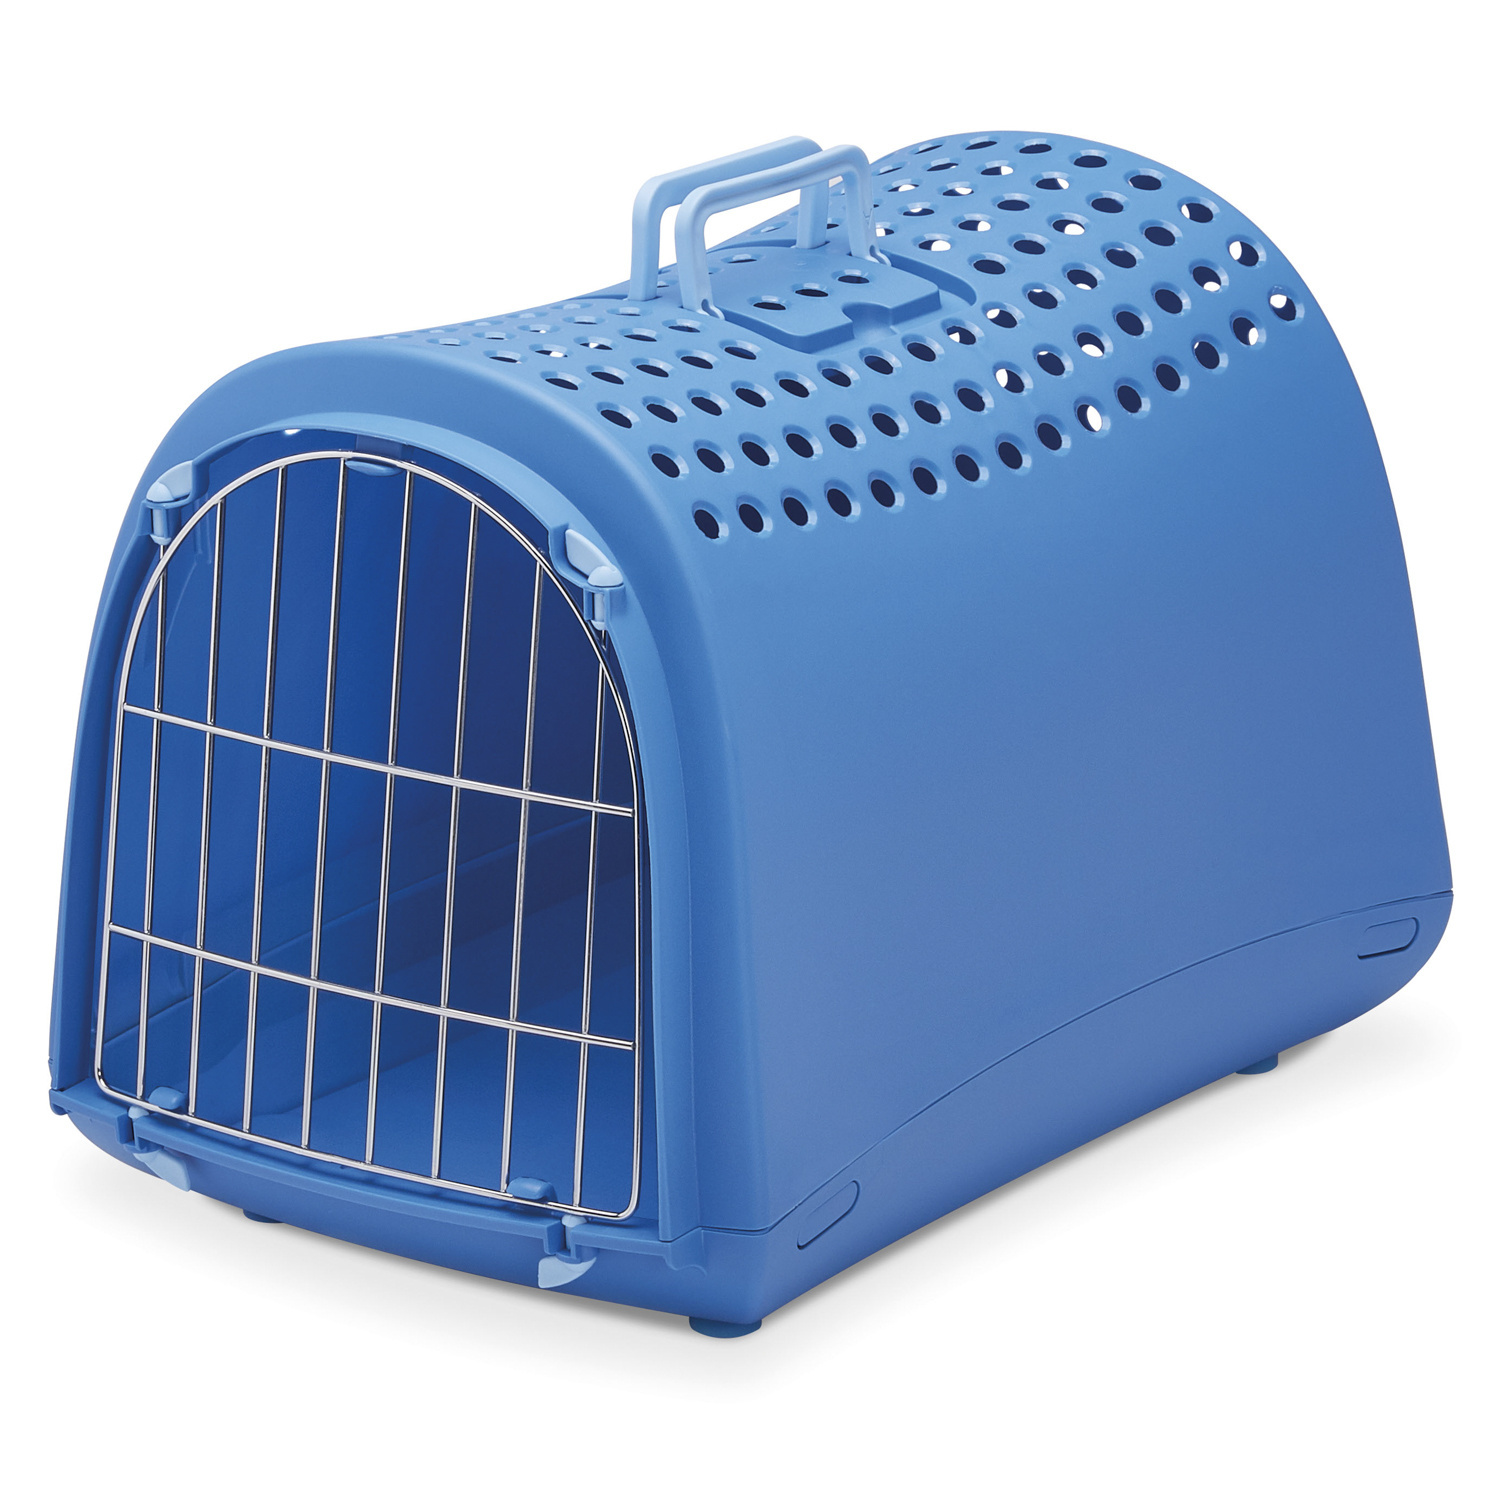 IMAC IMAC переноска для кошек и собак, нежно-голубой (1,37 кг) imac imac переноска для кошек и собак антрацит 1 37 кг